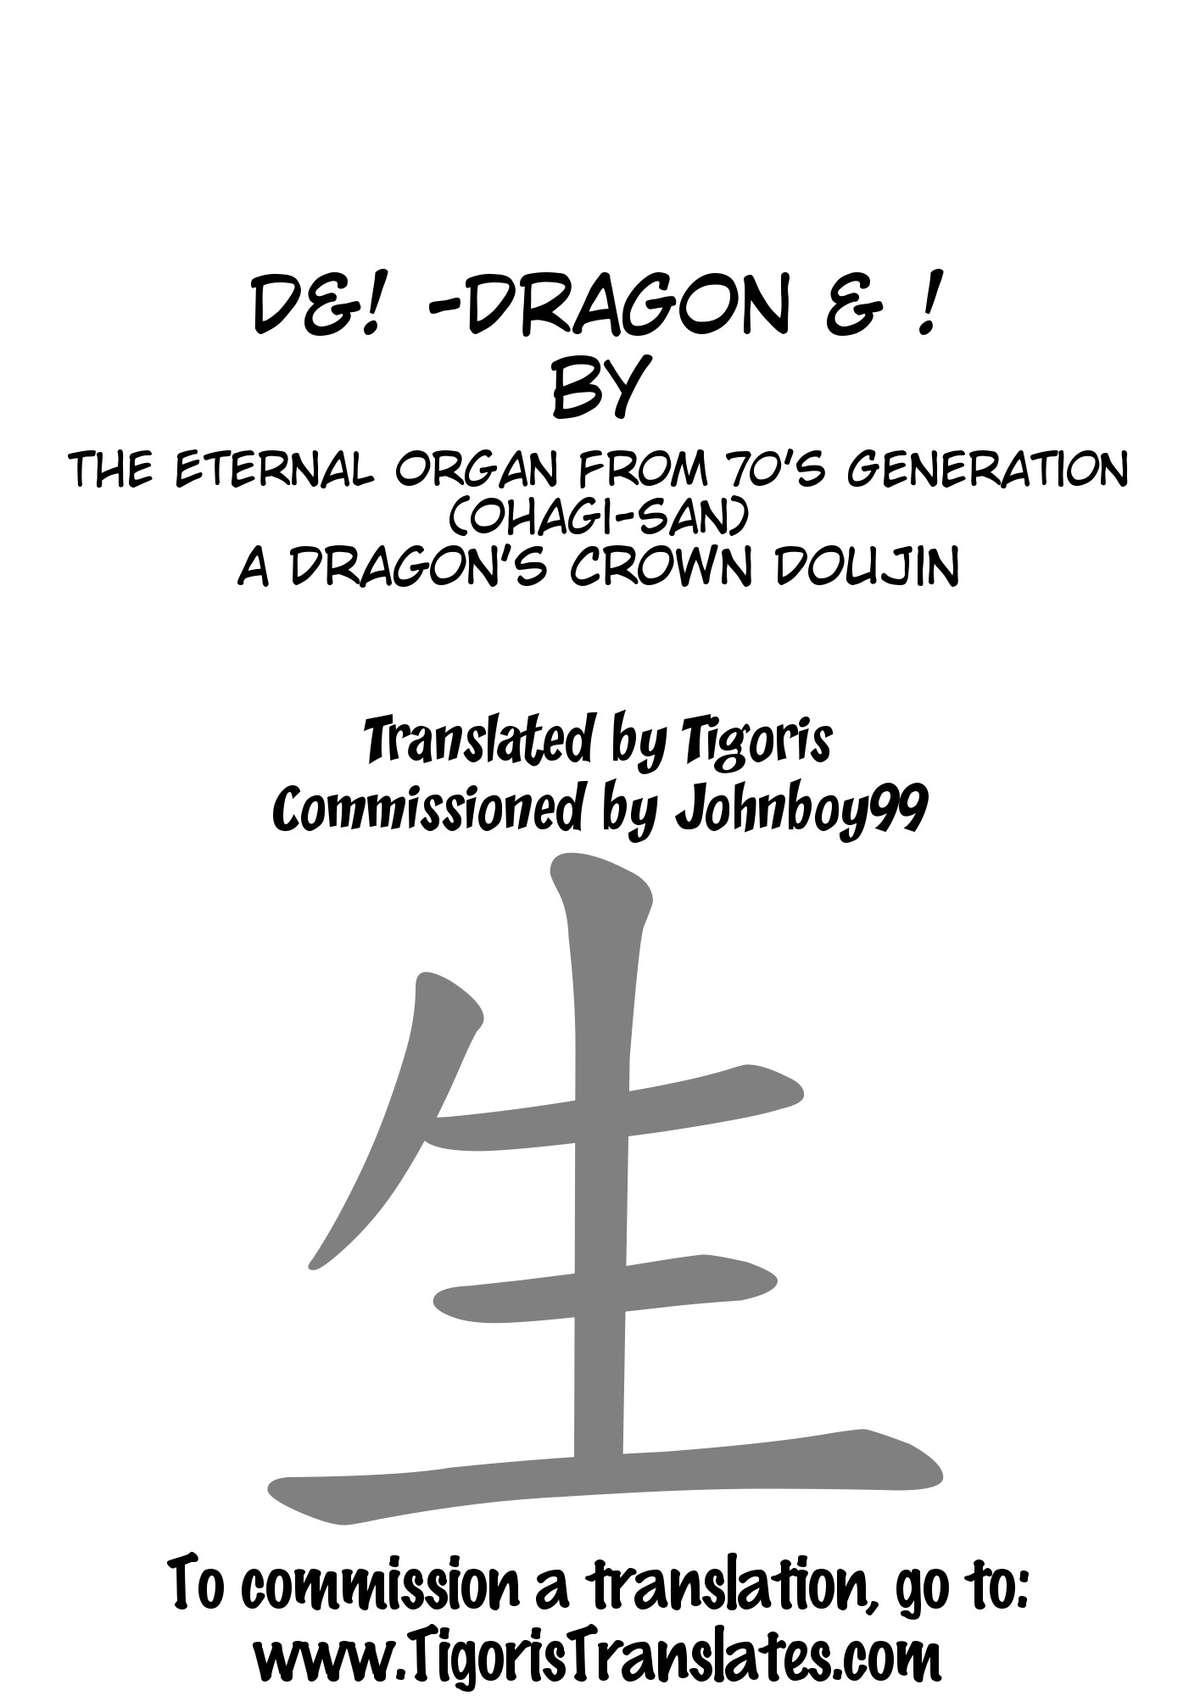 D&! -DRAGON & ! 9